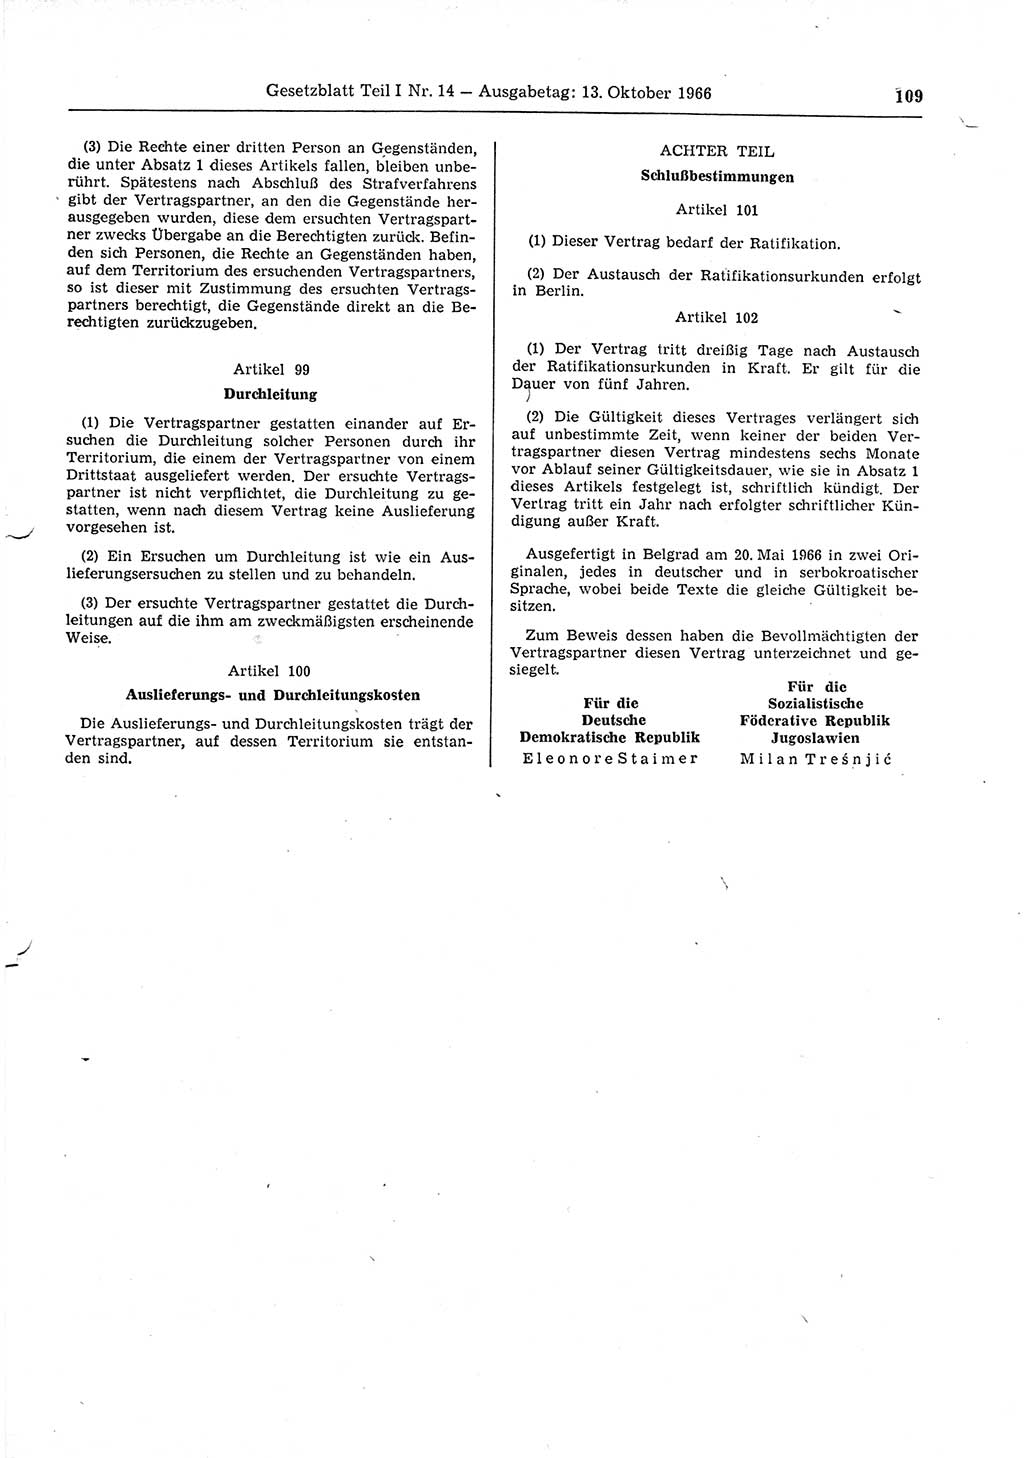 Gesetzblatt (GBl.) der Deutschen Demokratischen Republik (DDR) Teil Ⅰ 1966, Seite 109 (GBl. DDR Ⅰ 1966, S. 109)